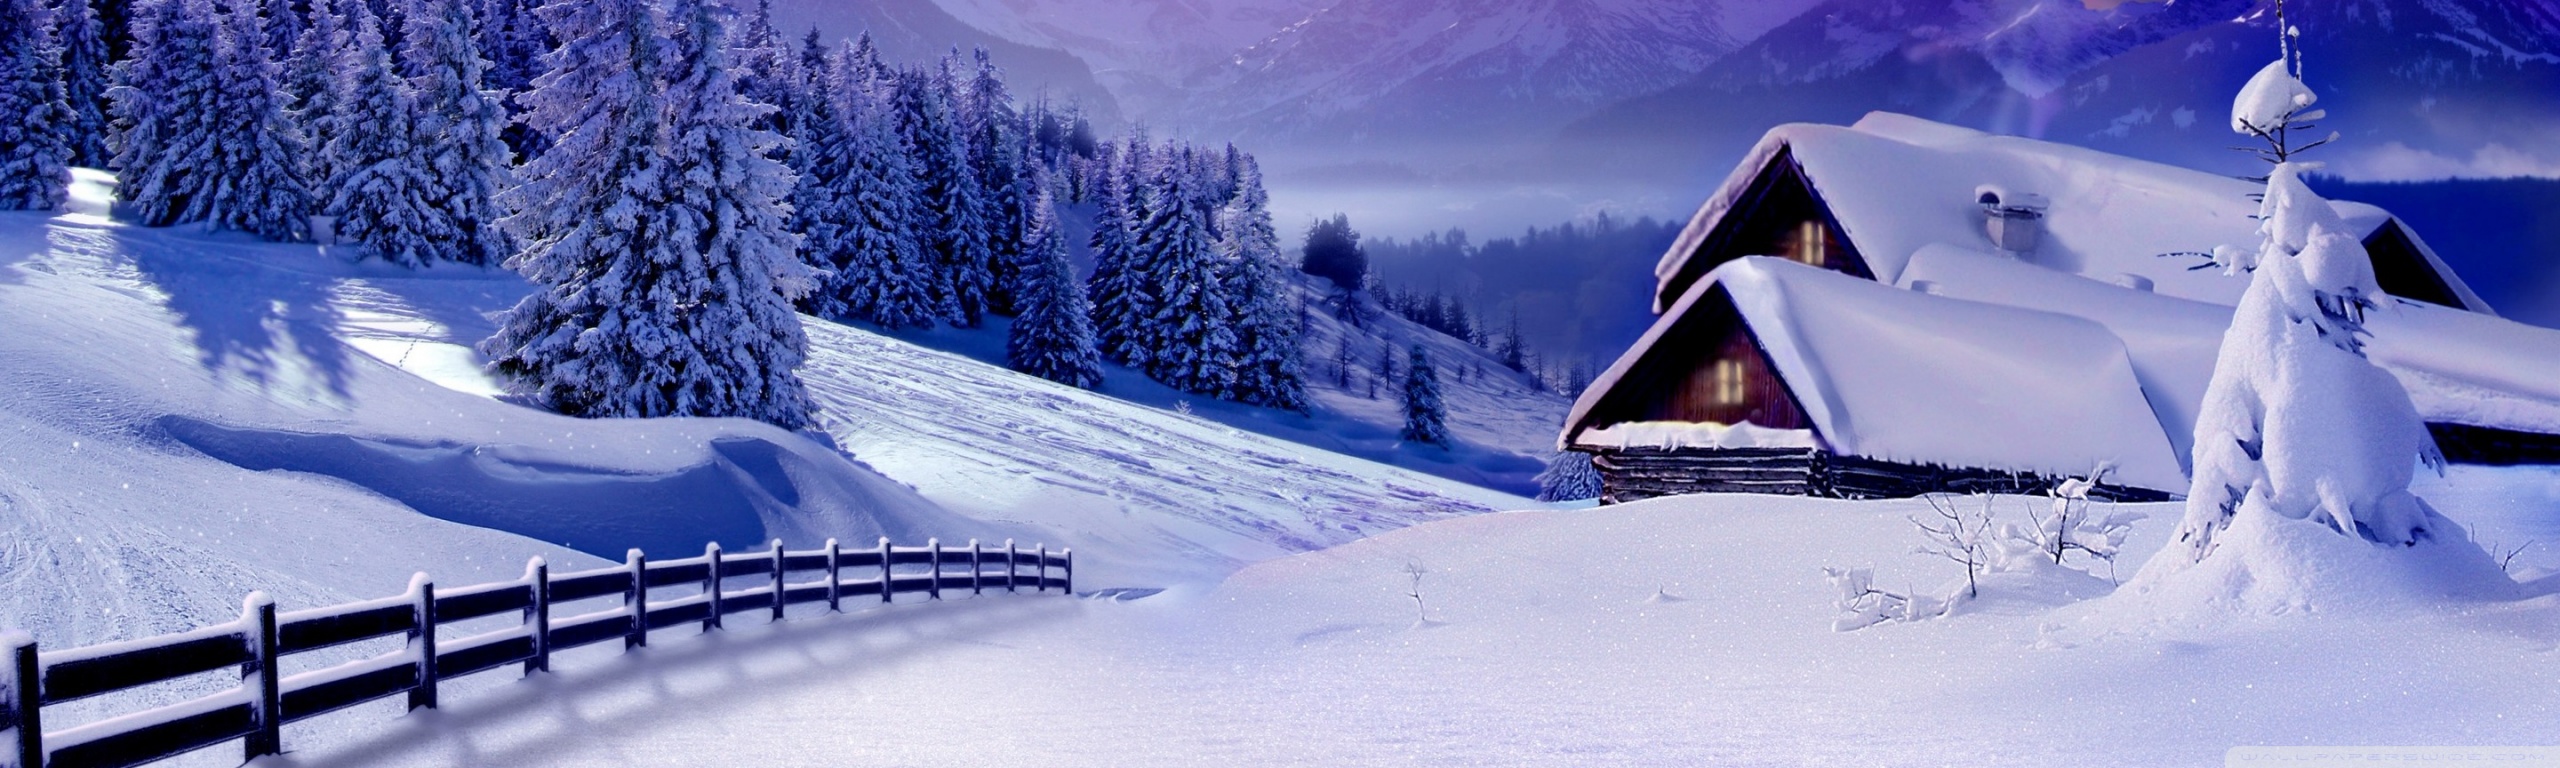 Mùa đông đang đến, bạn đã sẵn sàng để đón những cảnh tuyết phủ trắng ngập tràn không gian? Không chỉ làm cho bạn cảm thấy sảng khoái và tươi trẻ, mùa đông còn mang đến cho bạn cơ hội để chụp những bức ảnh tuyệt đẹp về cảnh tuyết rơi, những cánh rừng trắng ngần và những ngôi nhà nông thôn ấm cúng. Hãy khám phá những hình ảnh đẹp nhất về mùa đông tại đây.